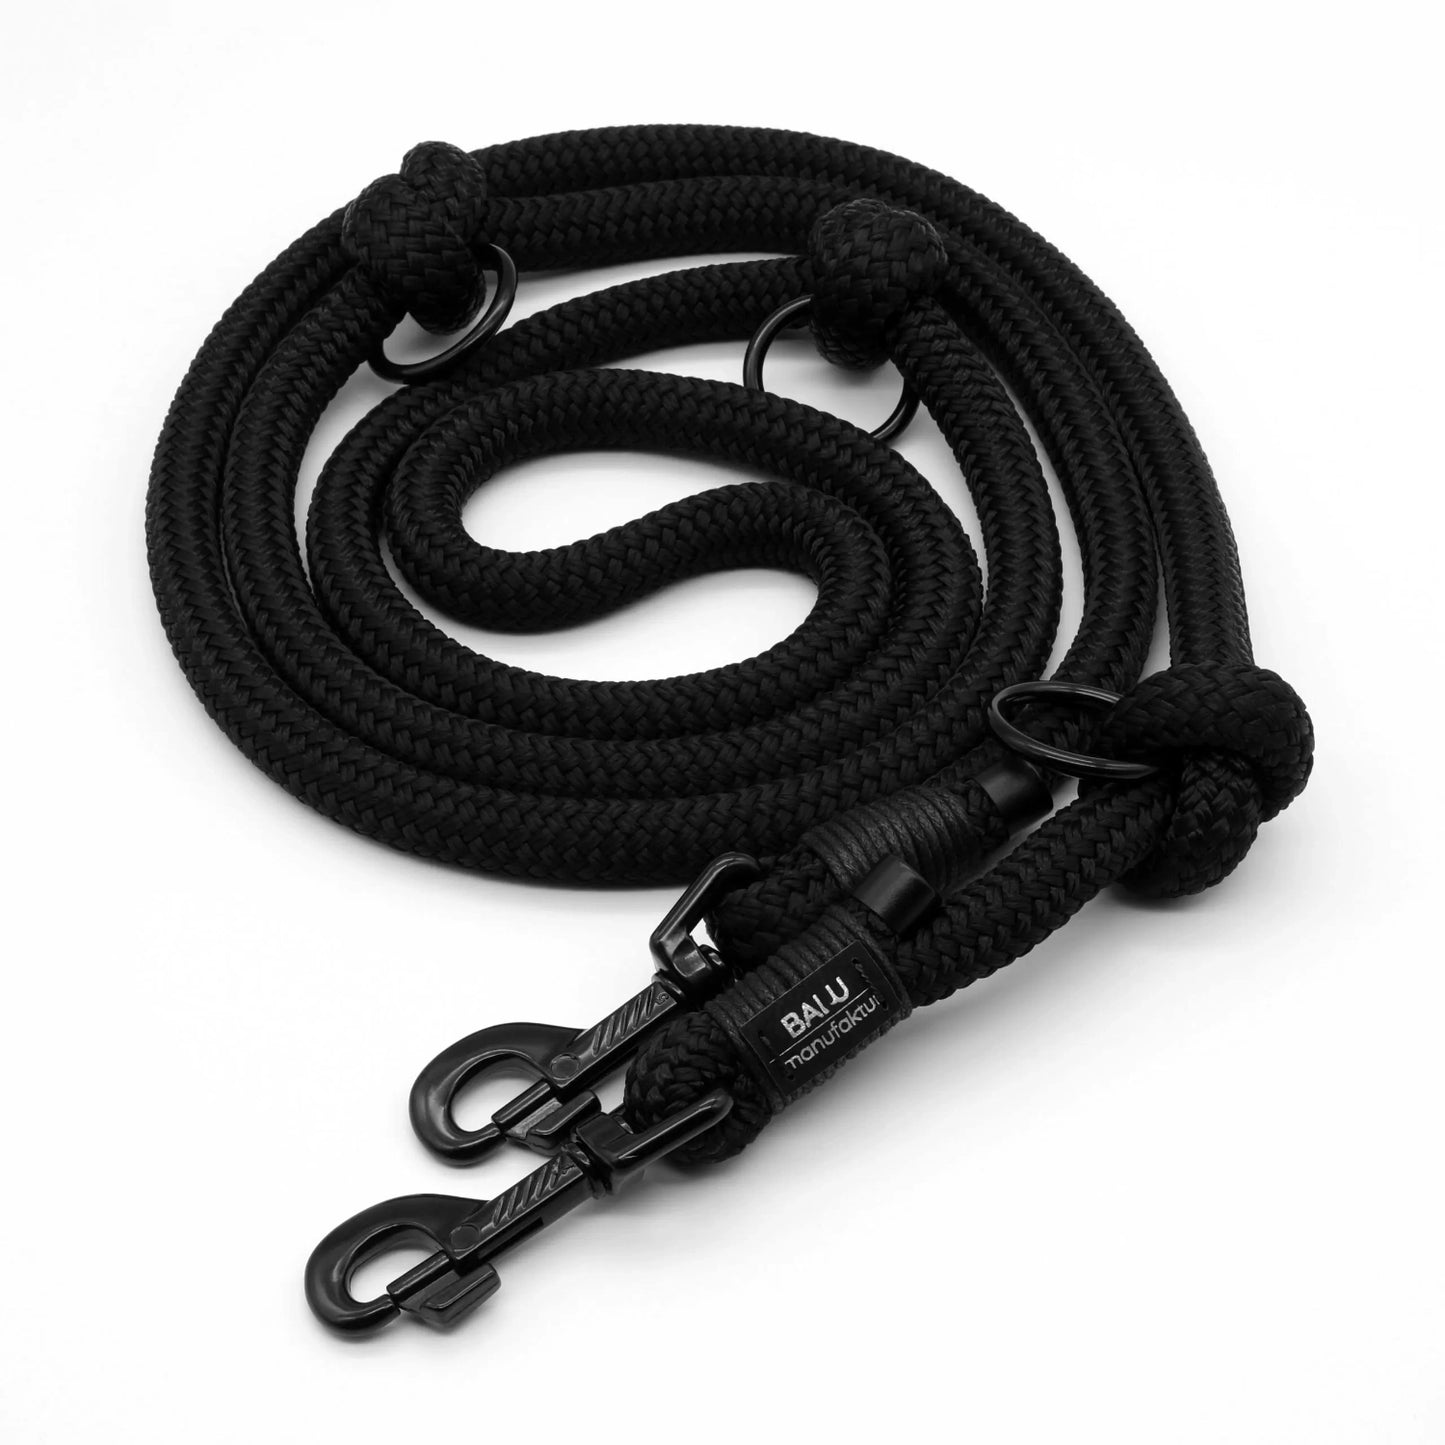 Verstellbare Hundeleine aus Seil 2m in schwarz mit schwarzen Metallelementen